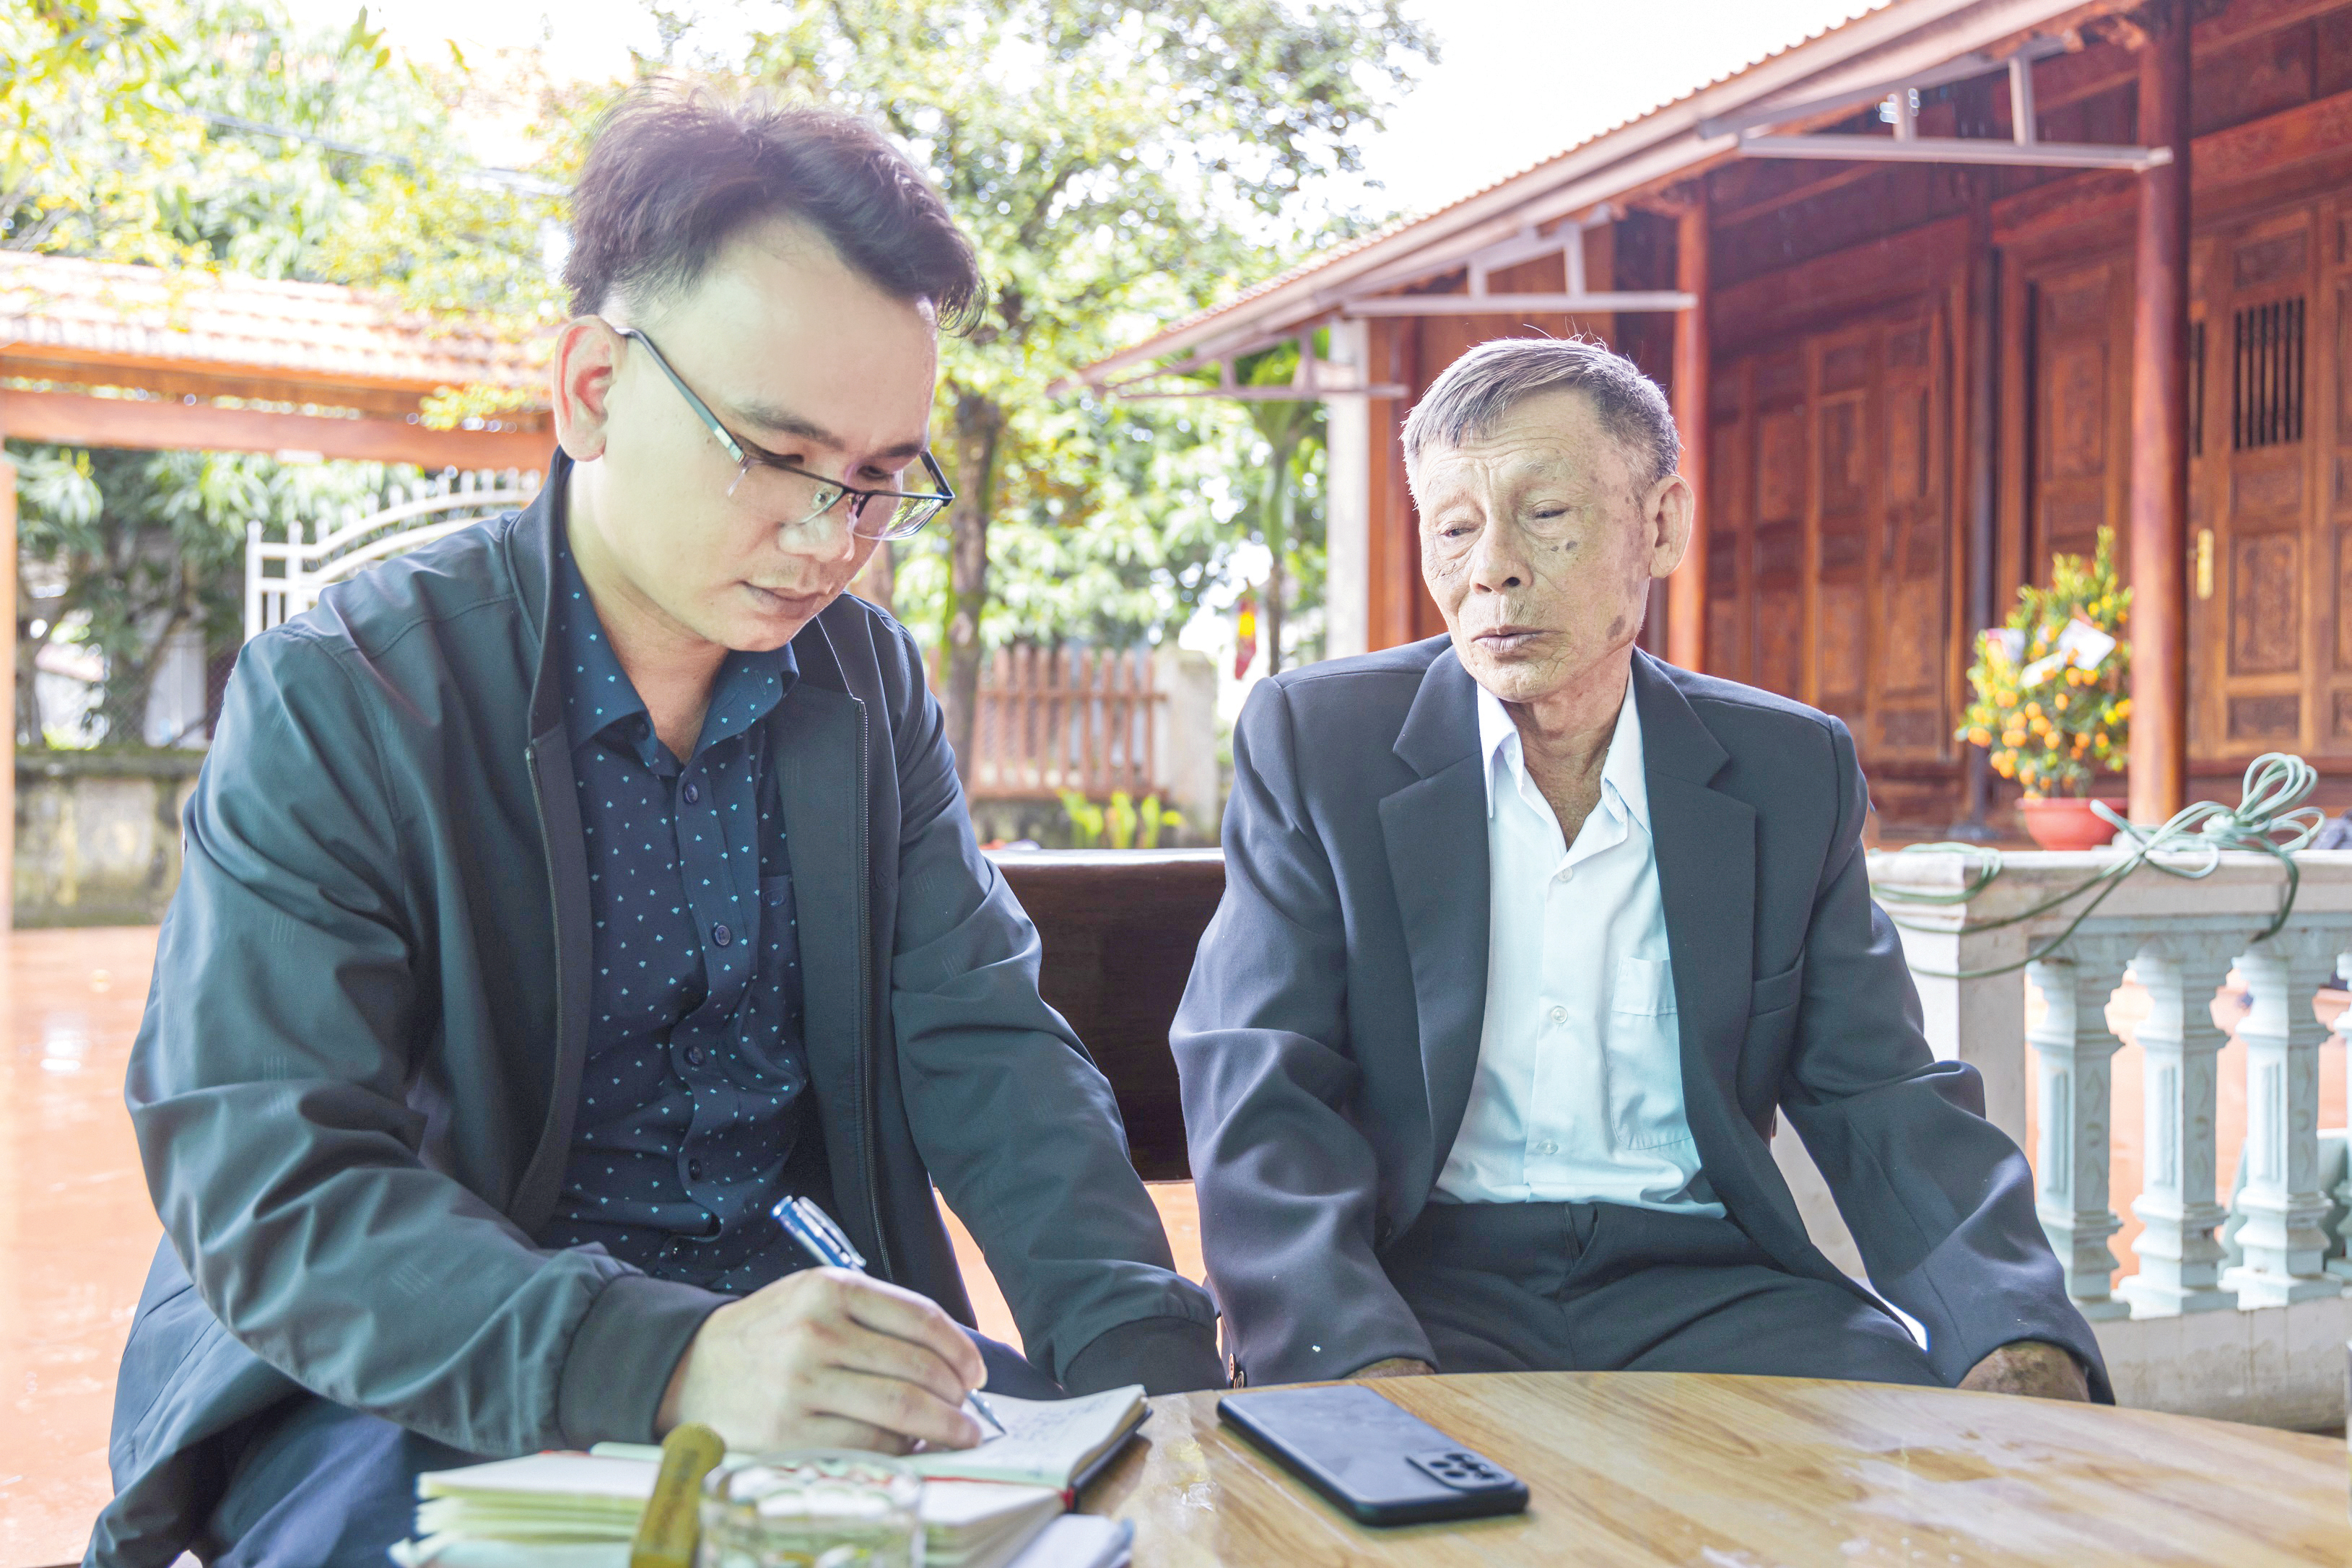 Ông Võ Xuân Khước trò chuyện với phóng viên về những kỷ niệm với Trung tướng Đồng Sỹ Nguyên. Ảnh: Nguyễn Hải